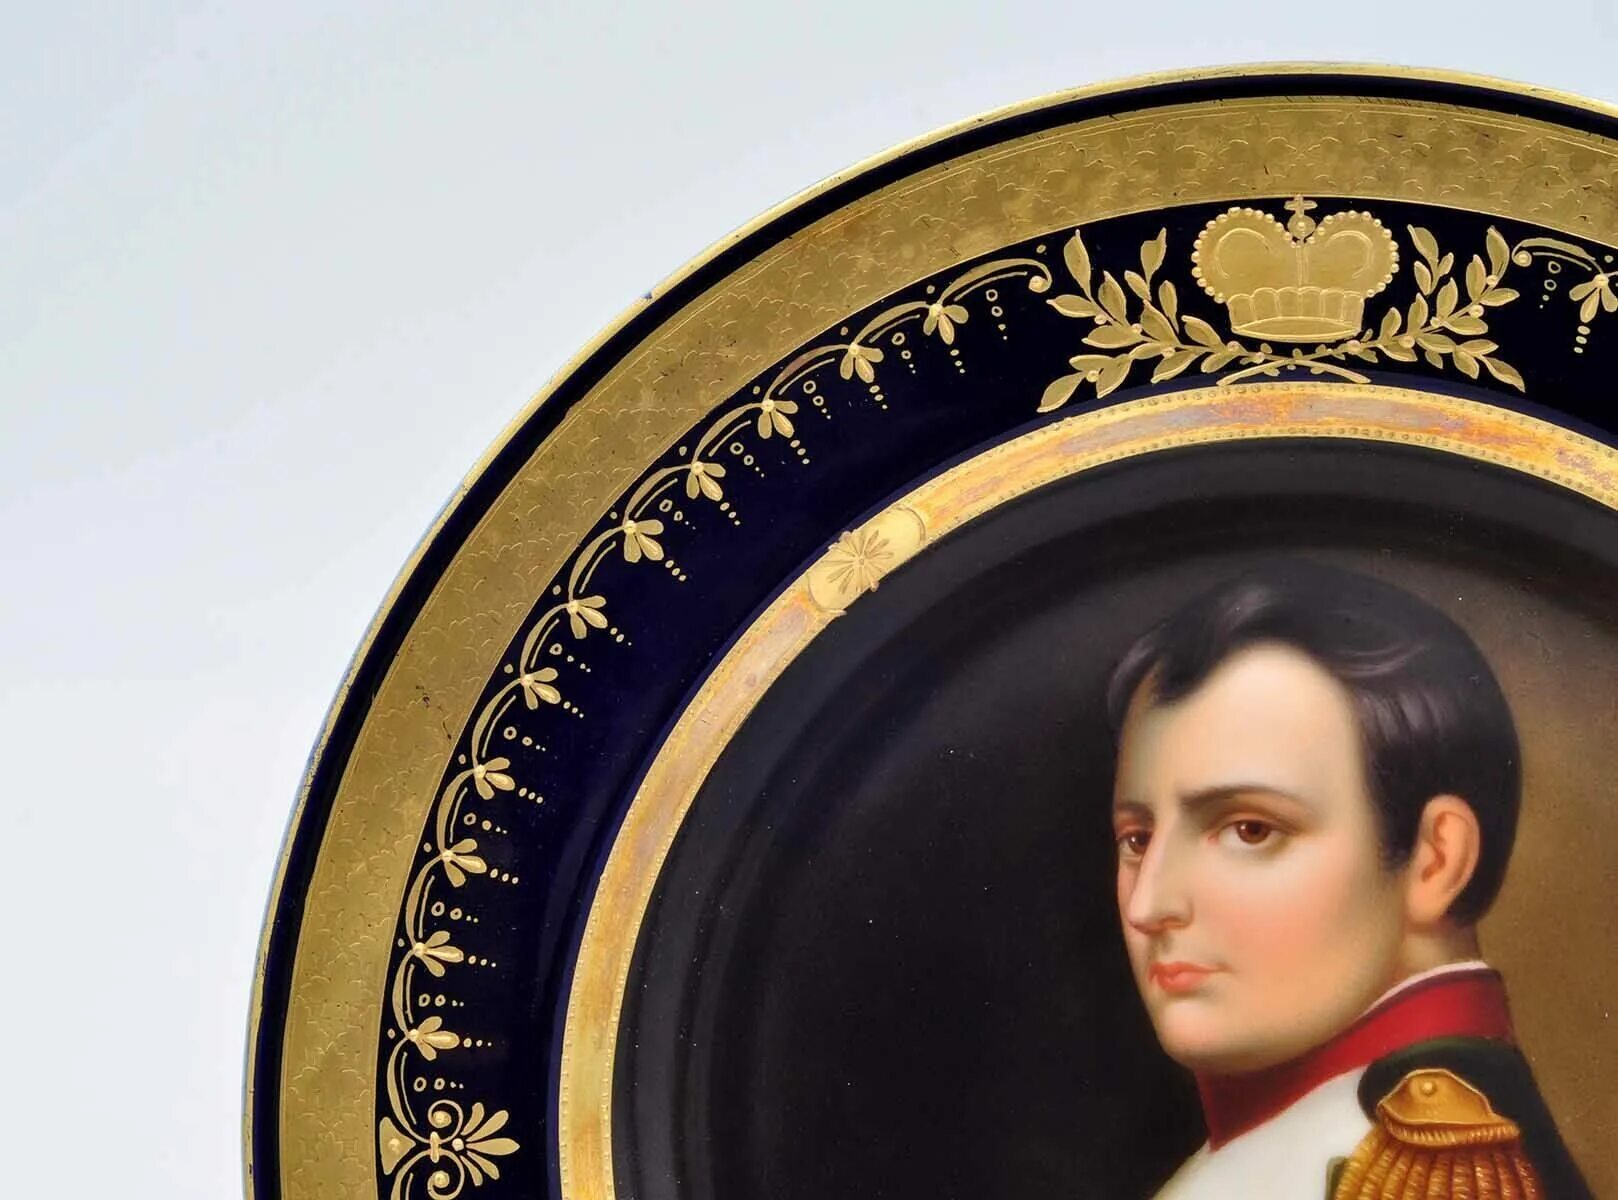 Наполеон бонапарт купить. Фарфоровая посуда Наполеона Бонапарта музей. Венская фарфоровая мануфактура. Наполеон на тарелке. Декоративная тарелка Наполеон.